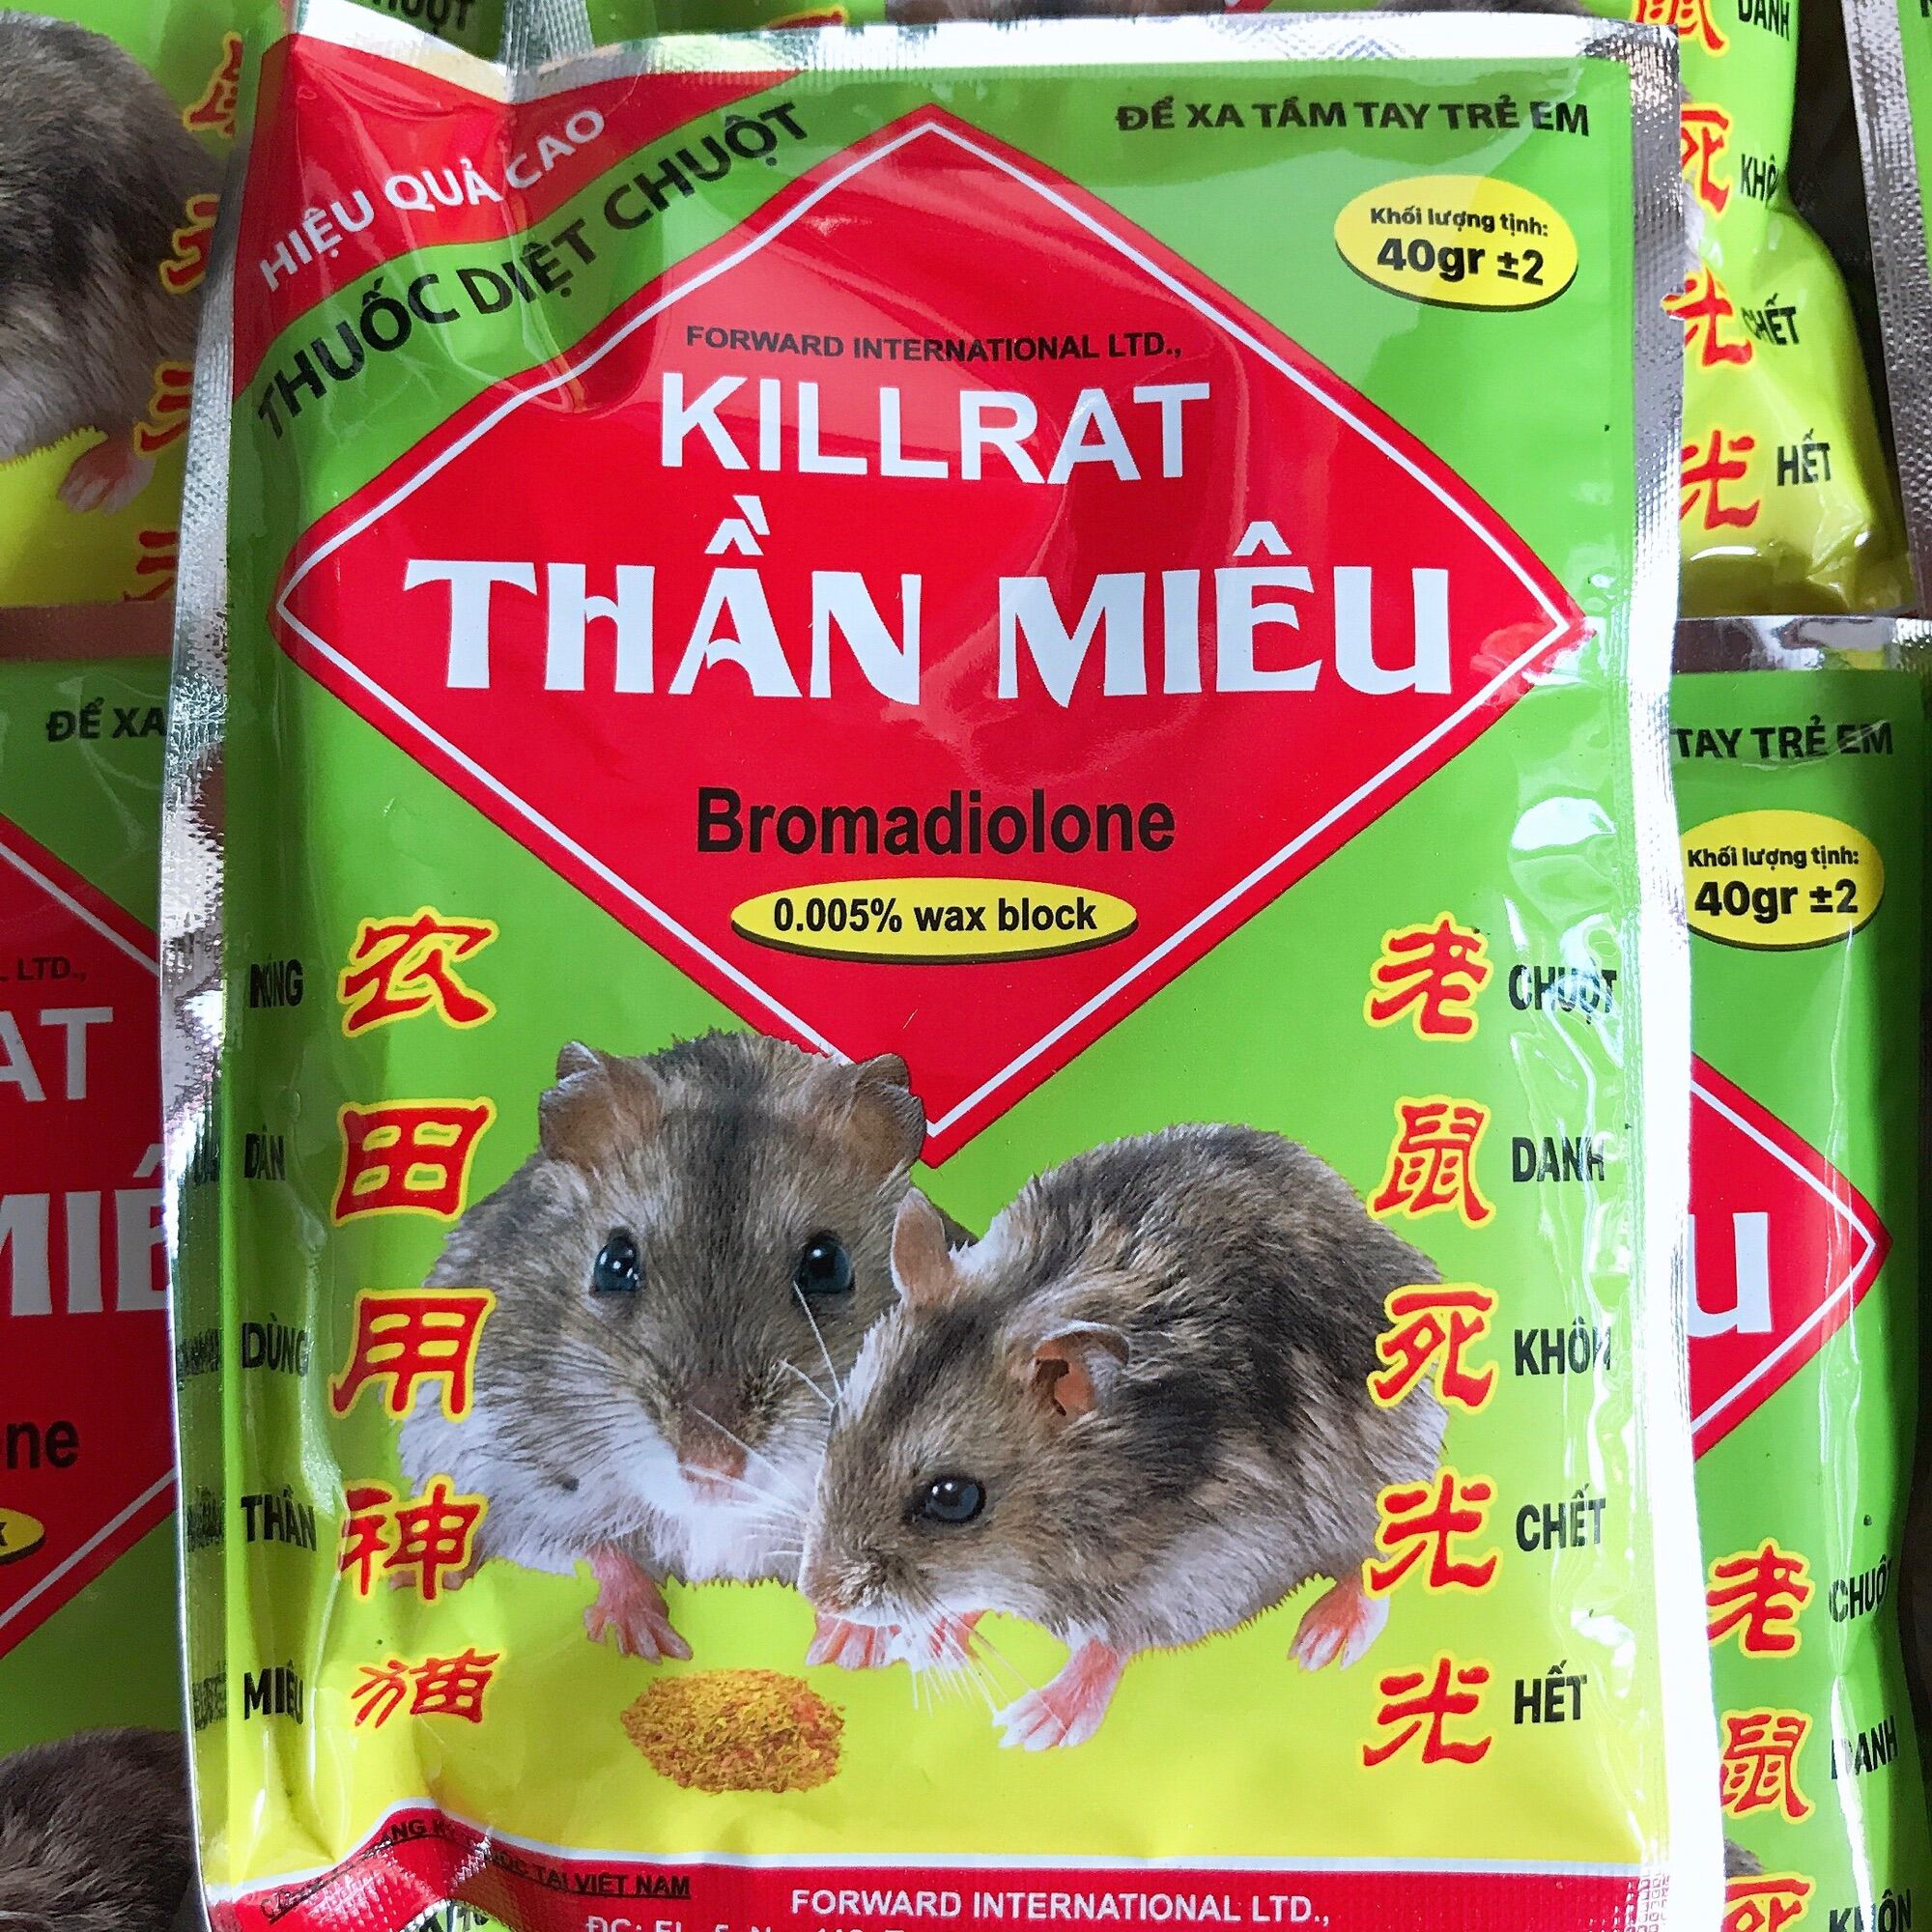 Thuốc diệt chuột- không cần ăn, ngửi cũng chết